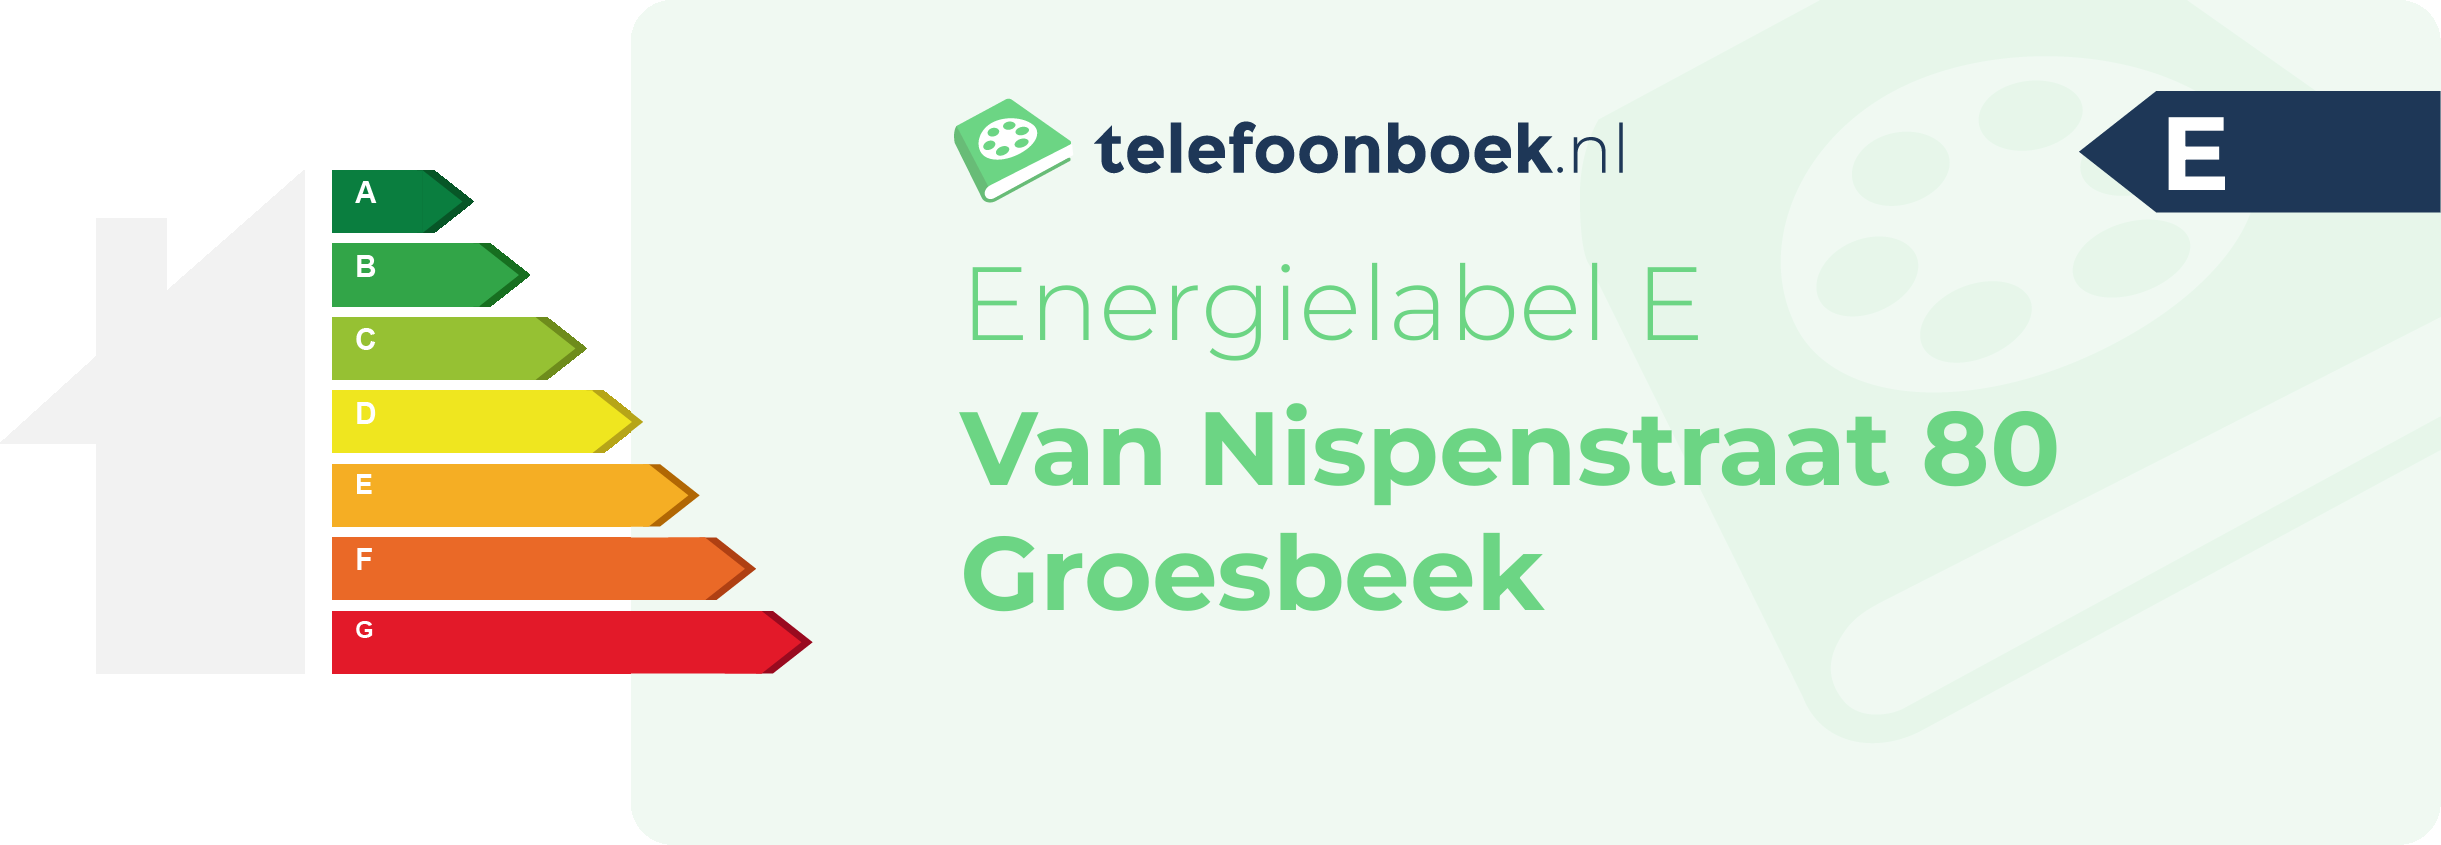 Energielabel Van Nispenstraat 80 Groesbeek